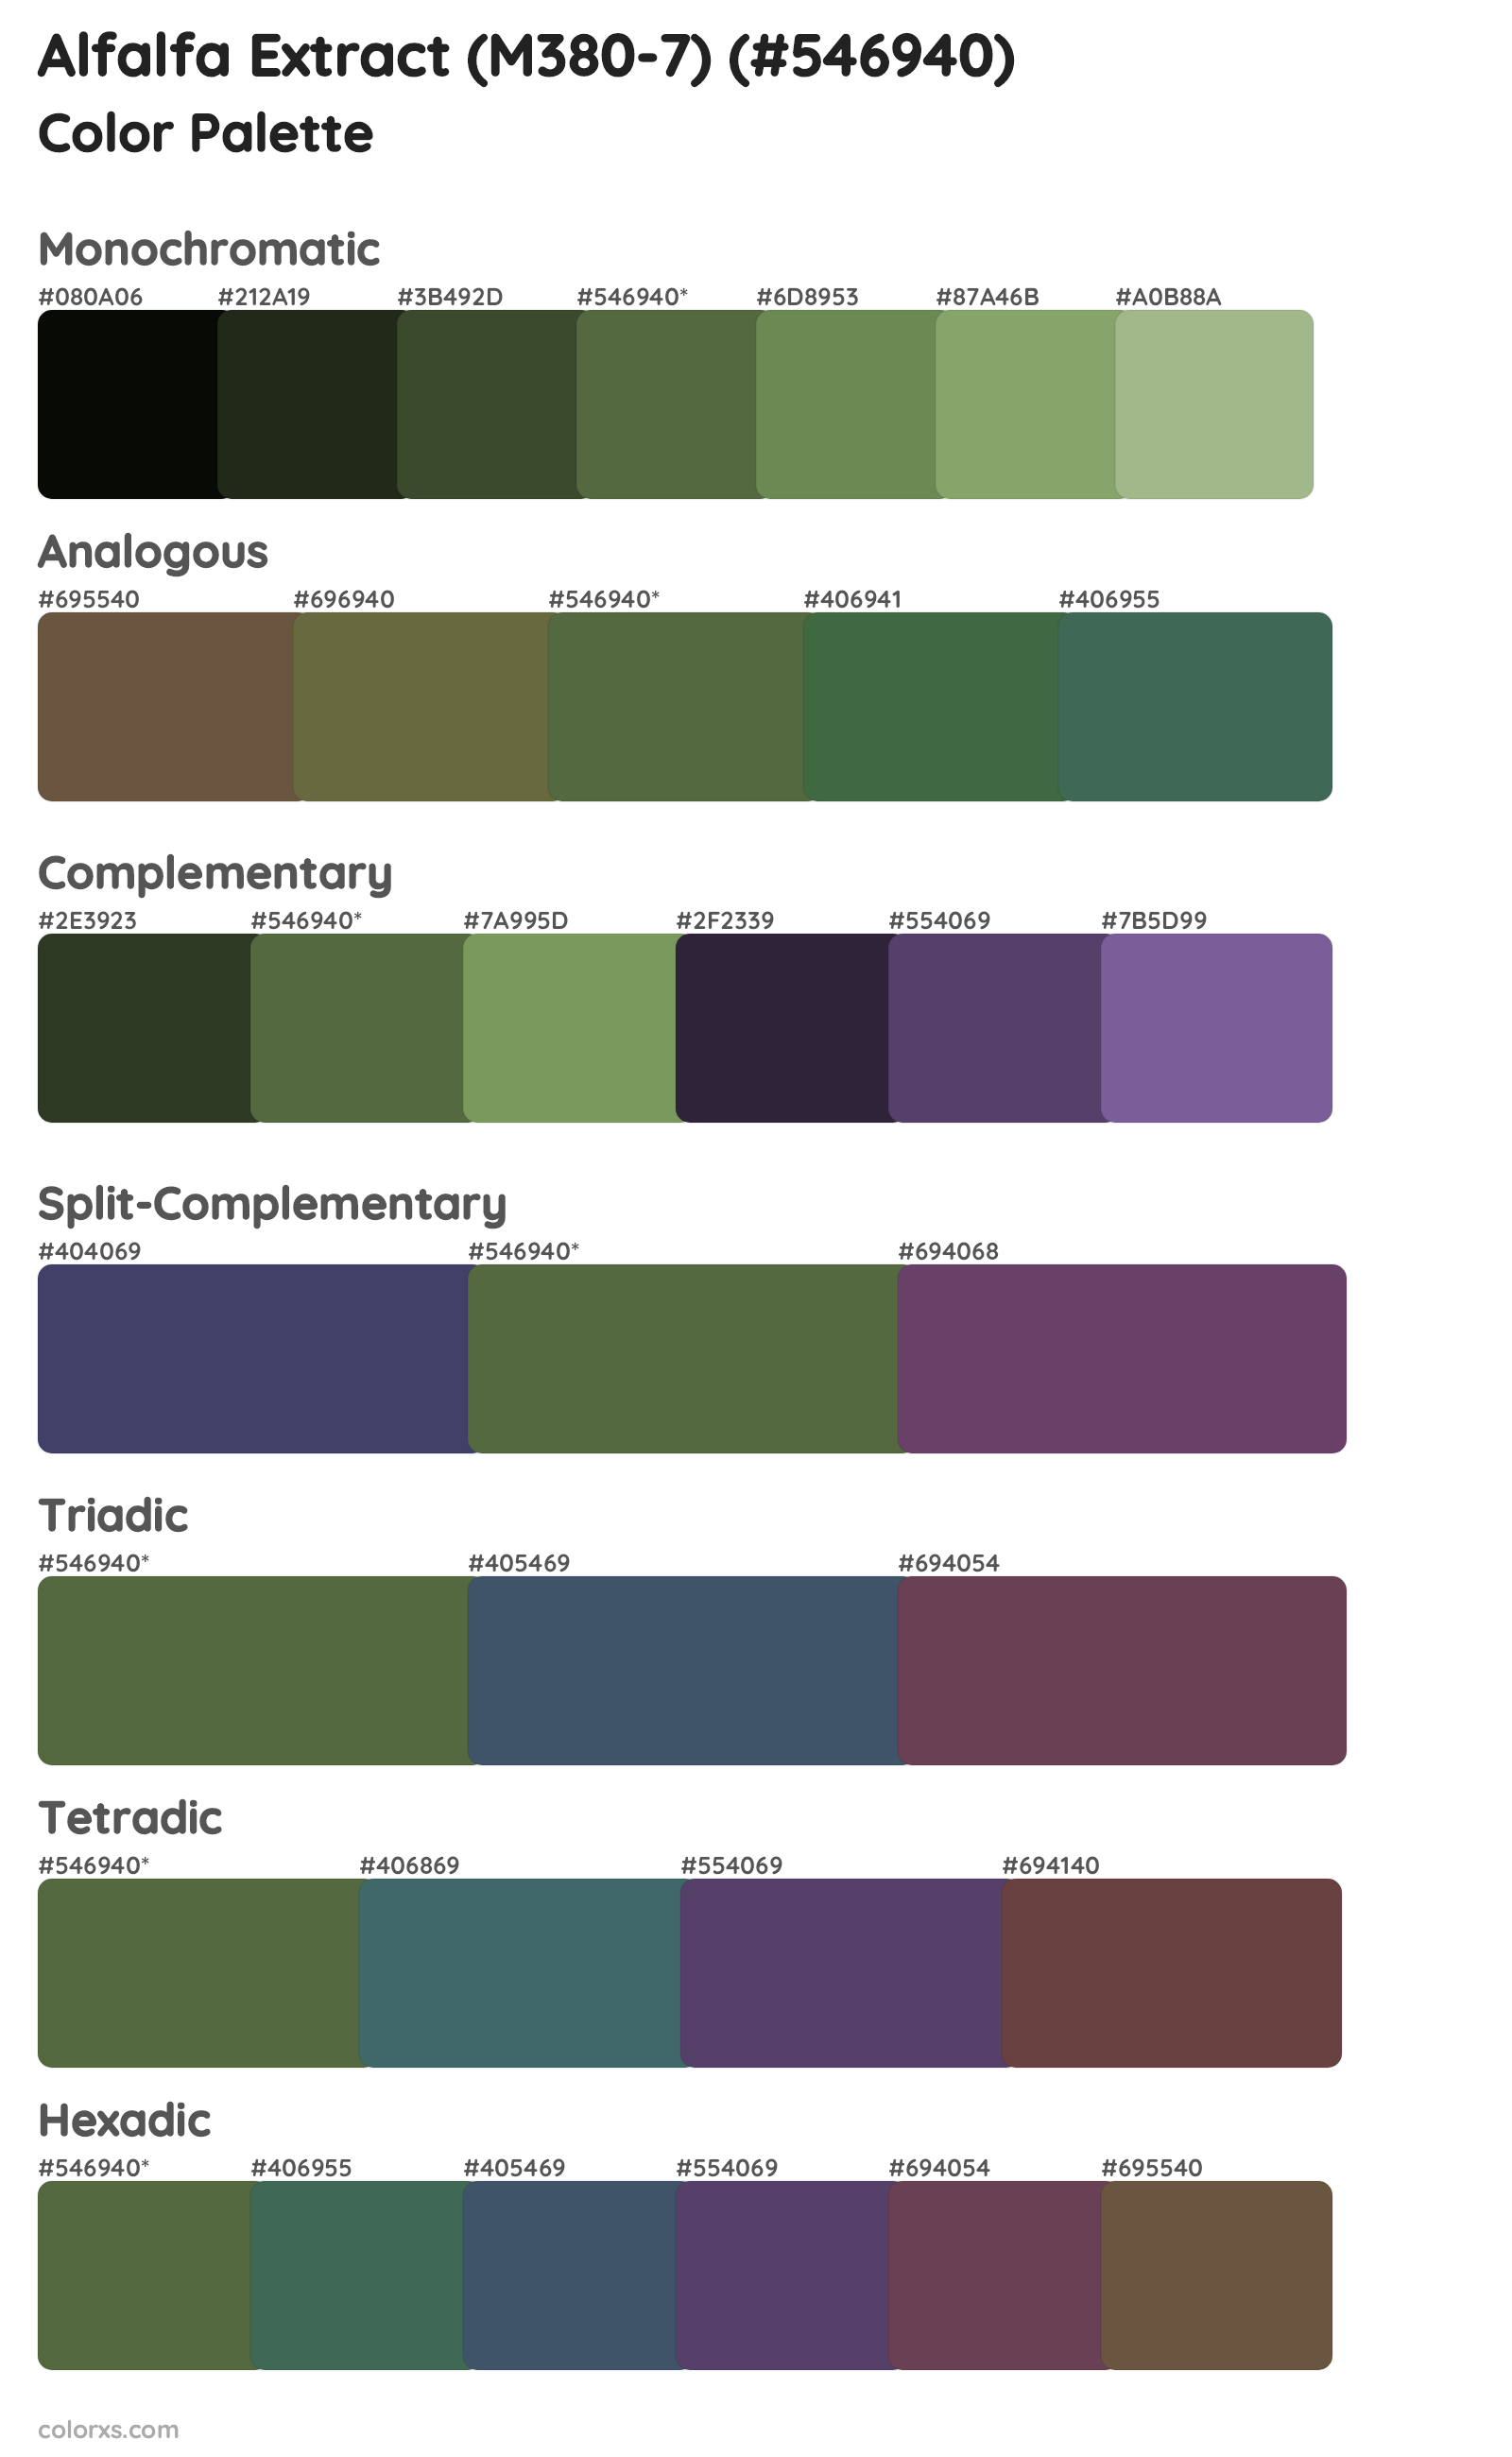 Alfalfa Extract (M380-7) Color Scheme Palettes